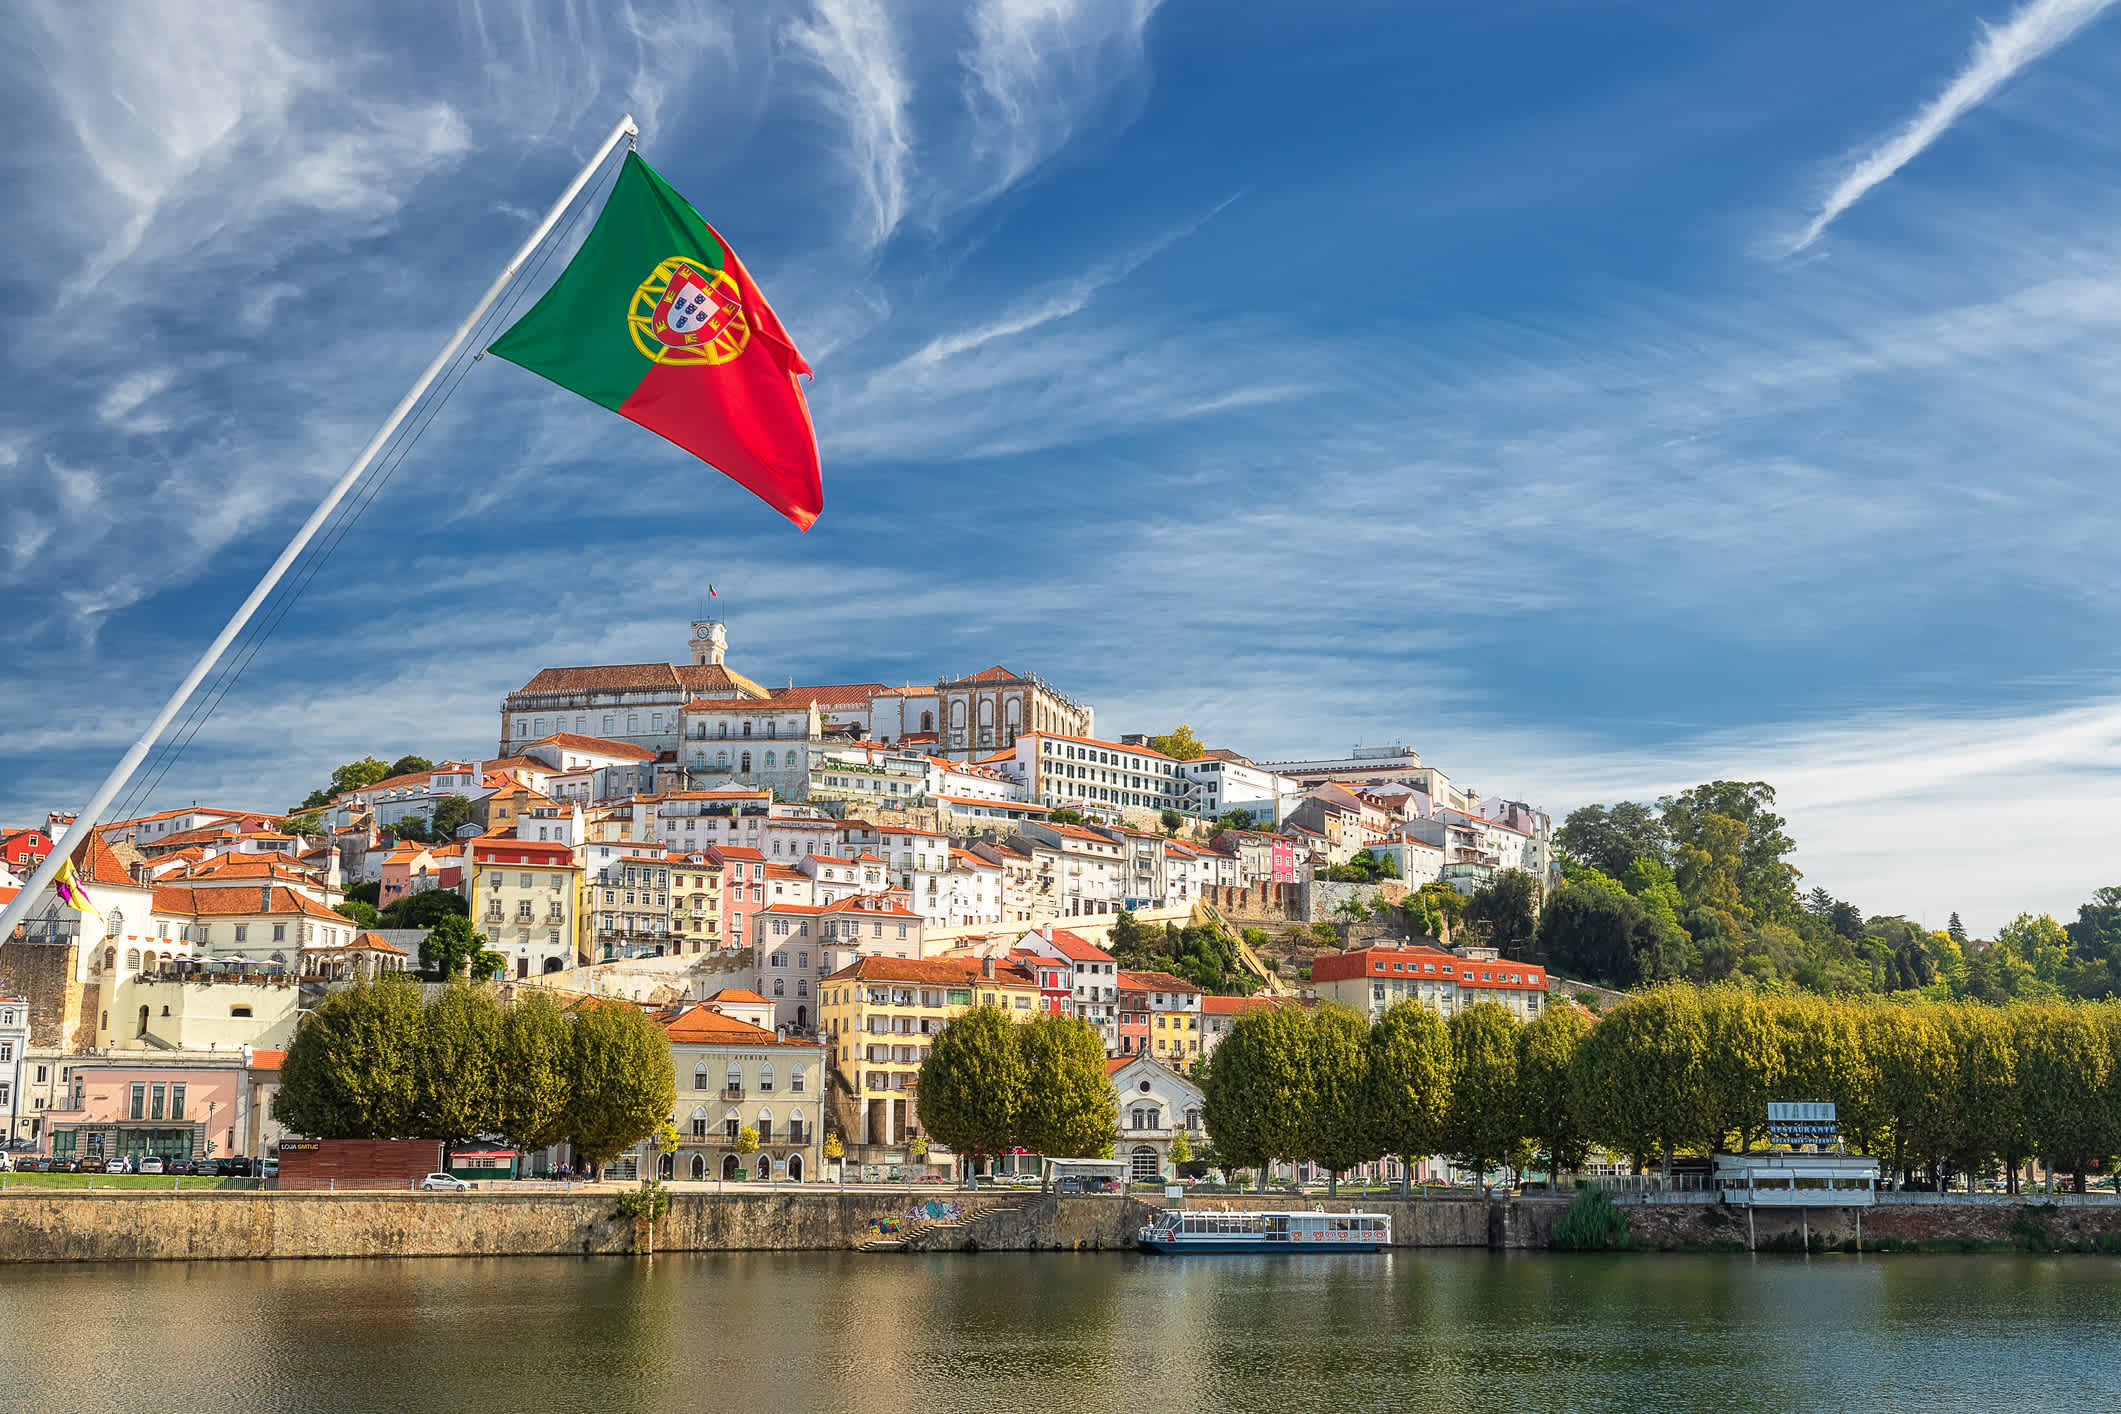 2. Coimbra